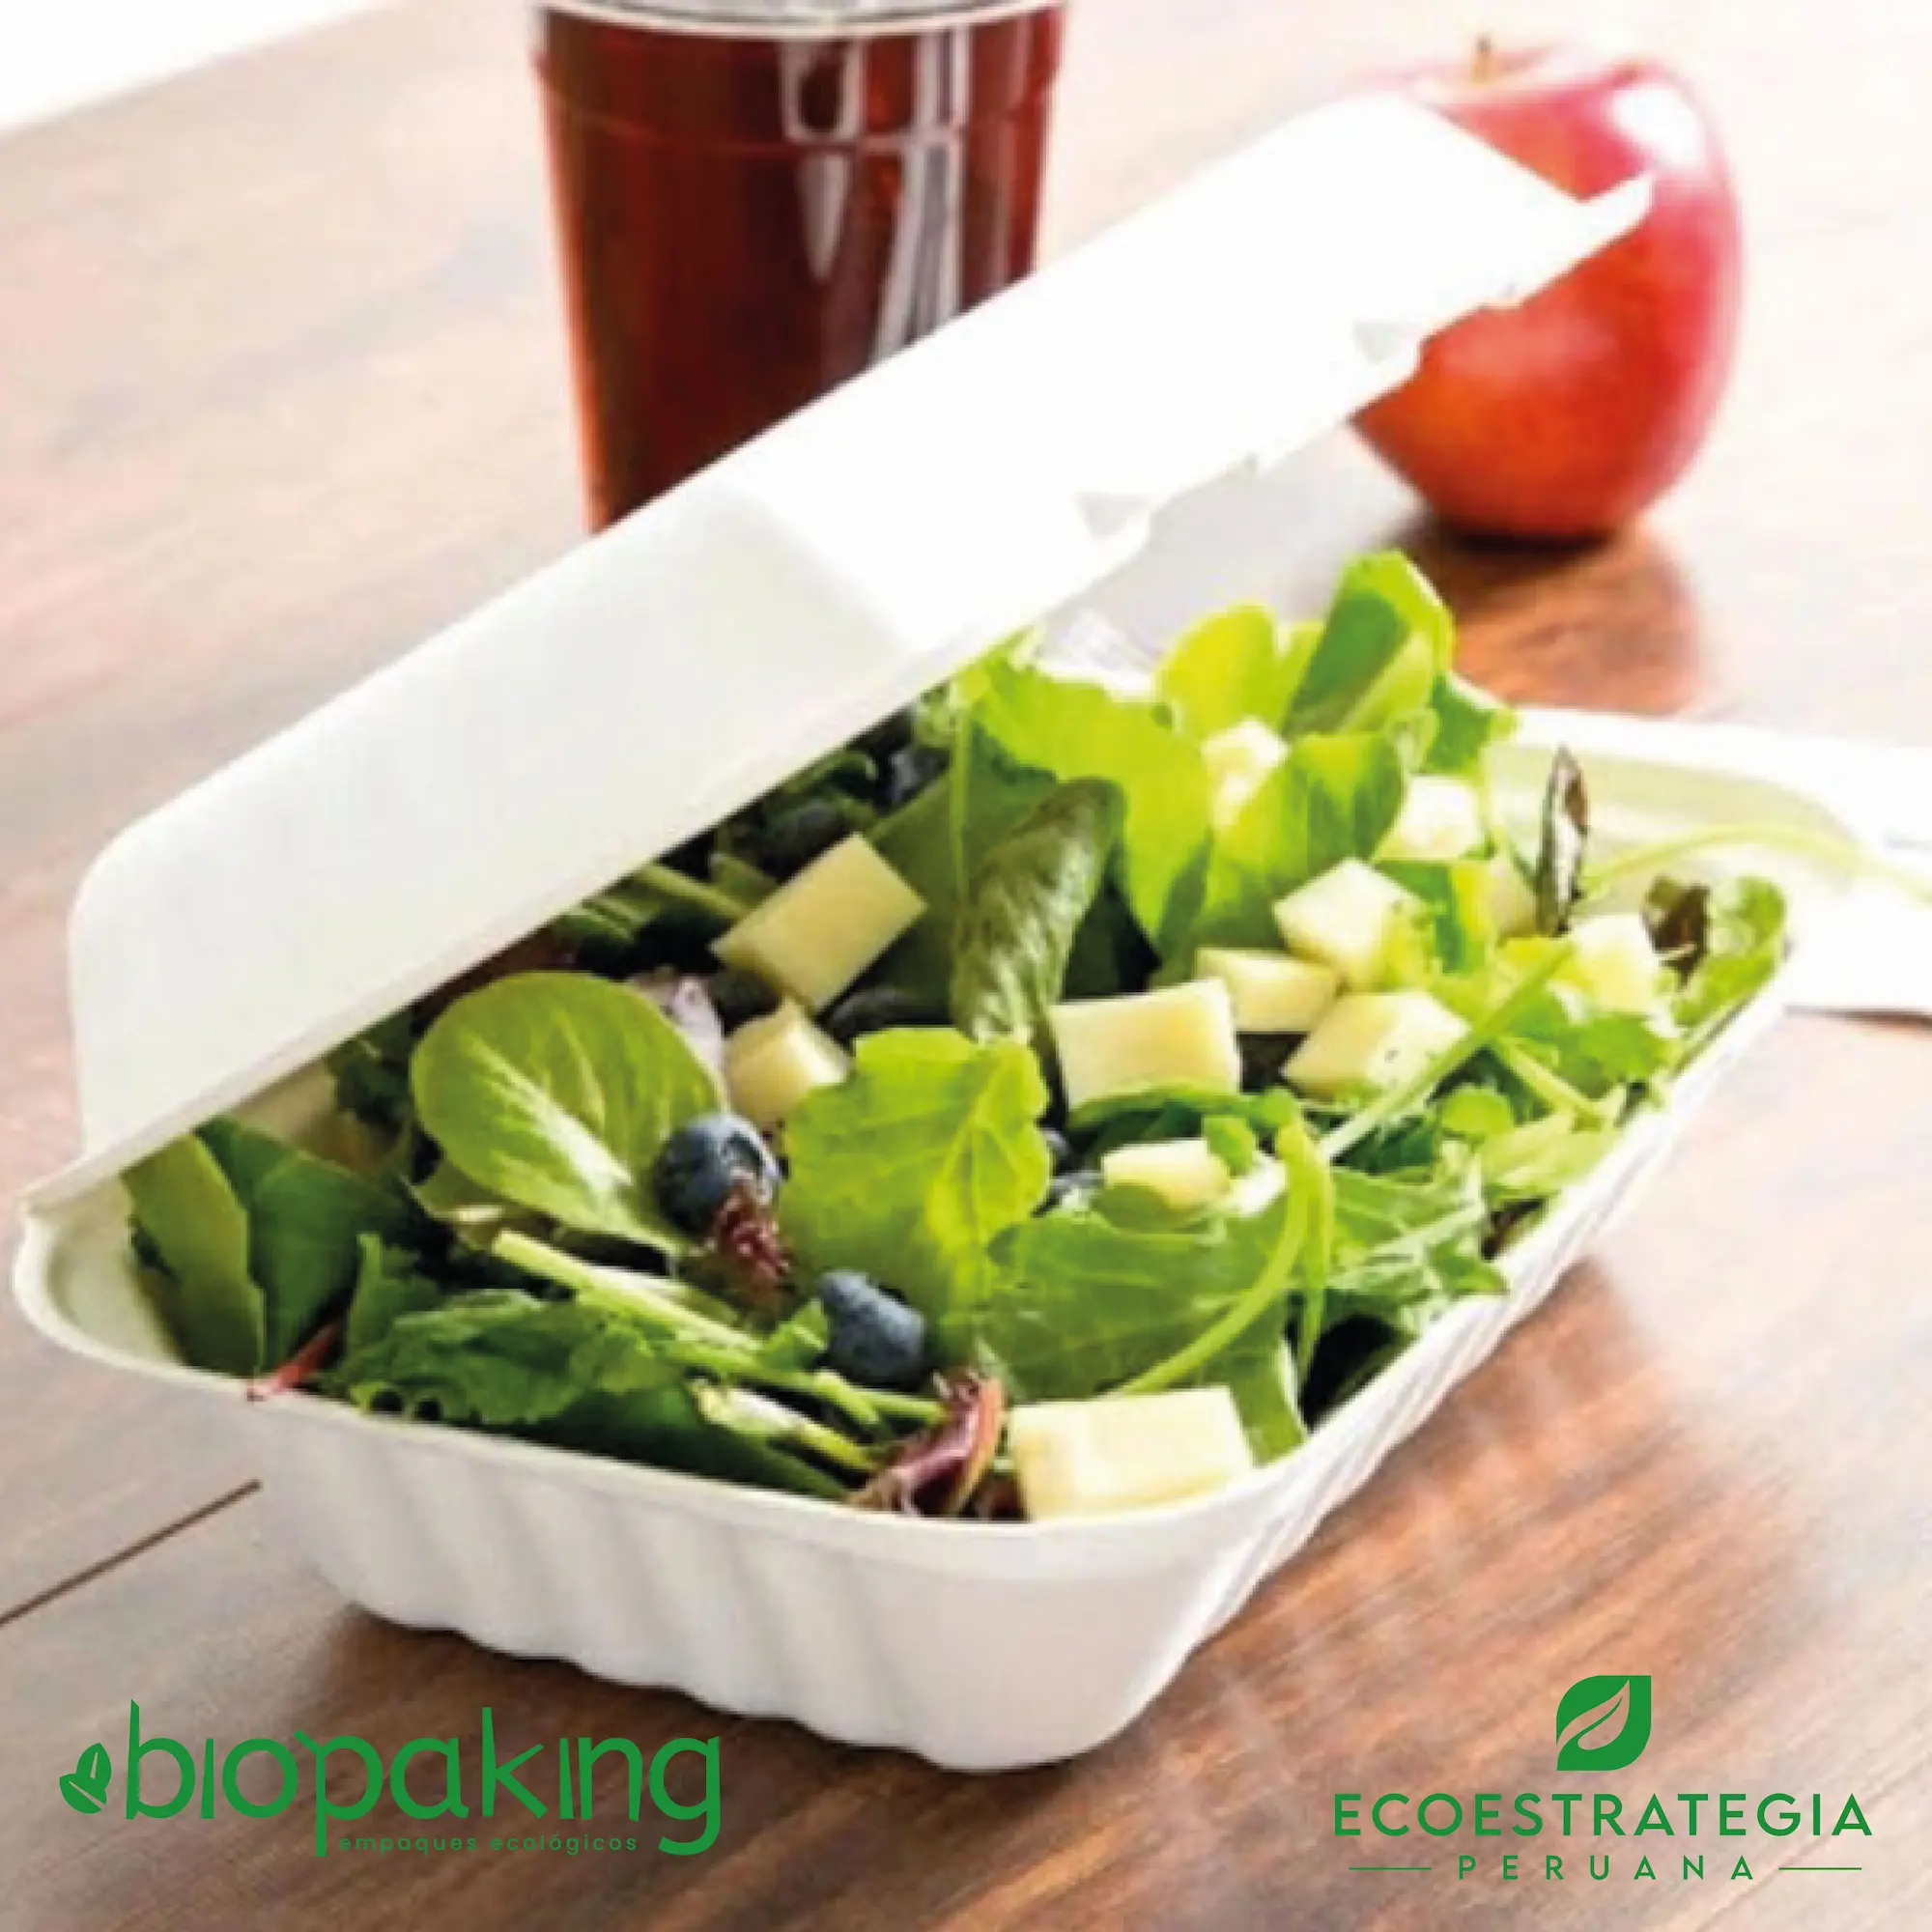 Este envase biodegradable CT5 tiene una capacidad de 900ml. Taper biodegradable a base del bagazo de fibra de caña de azúcar, empaques de gramaje ideal para comidas frías y calientes